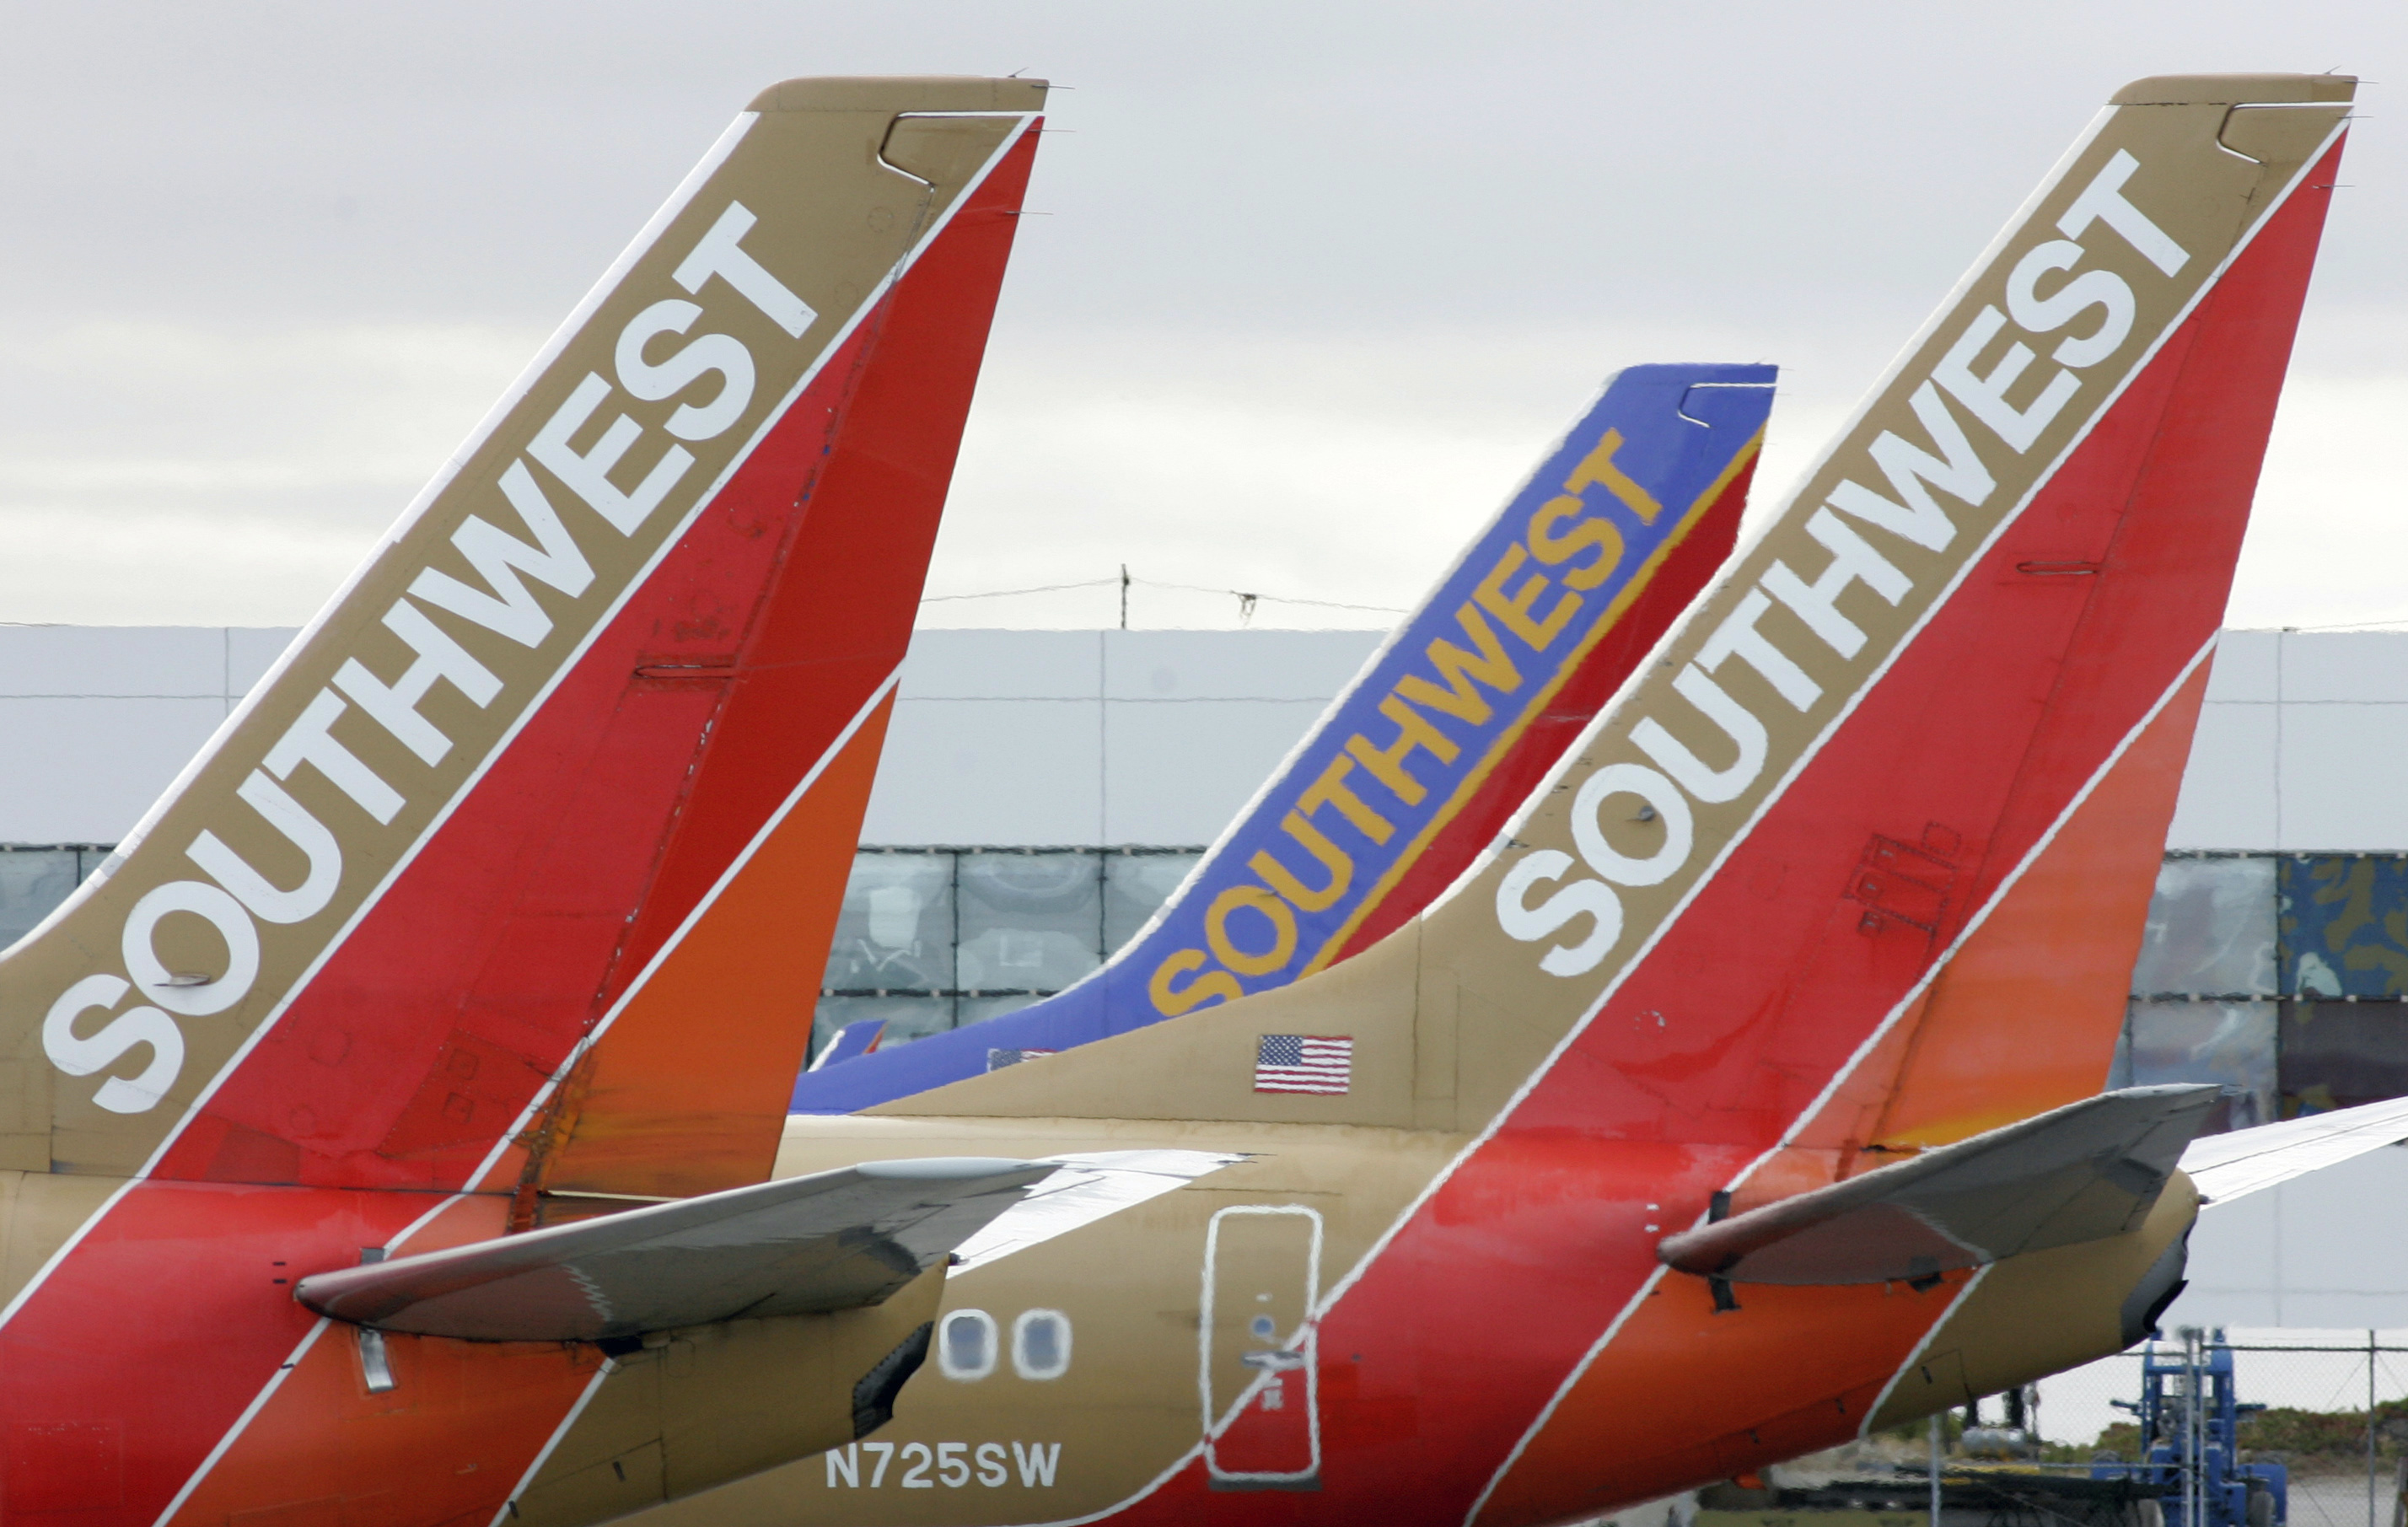 southwest airlines pilot says lets go brandon